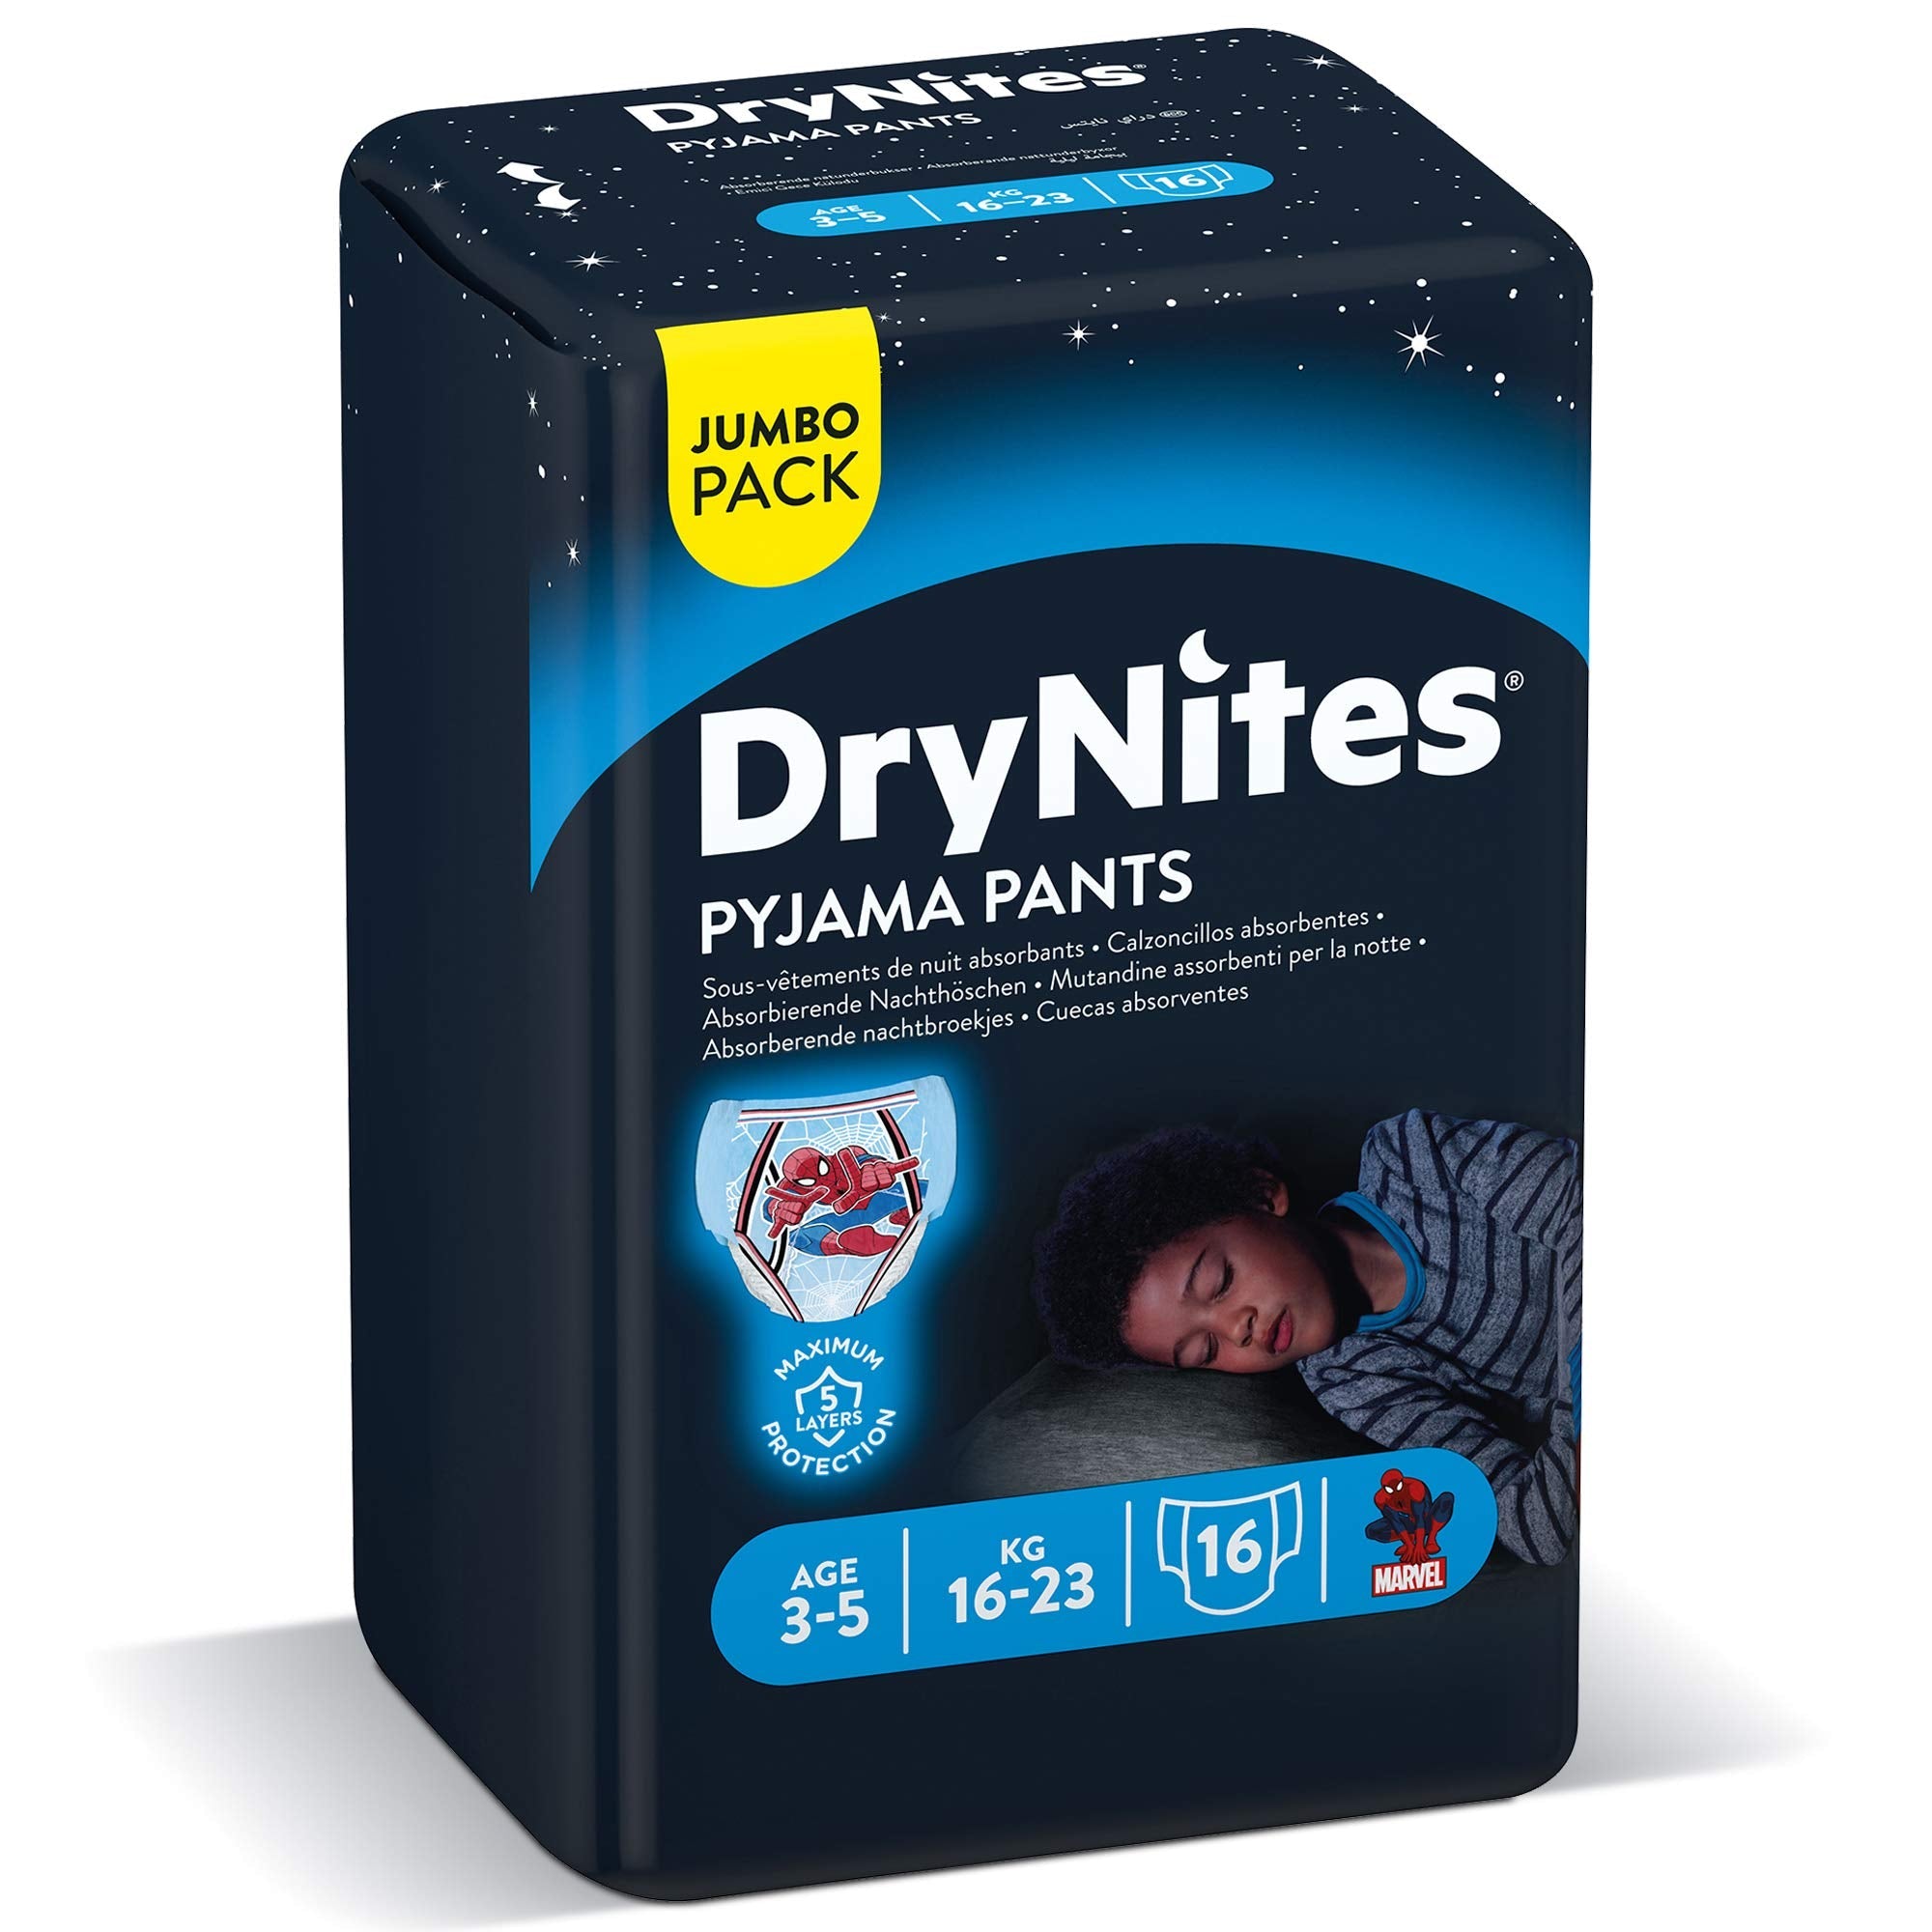 Drynites Pyjama Pants, Age 3-5 Y, Boy, 16-23 Kg, 16 Bed Wetting Pants